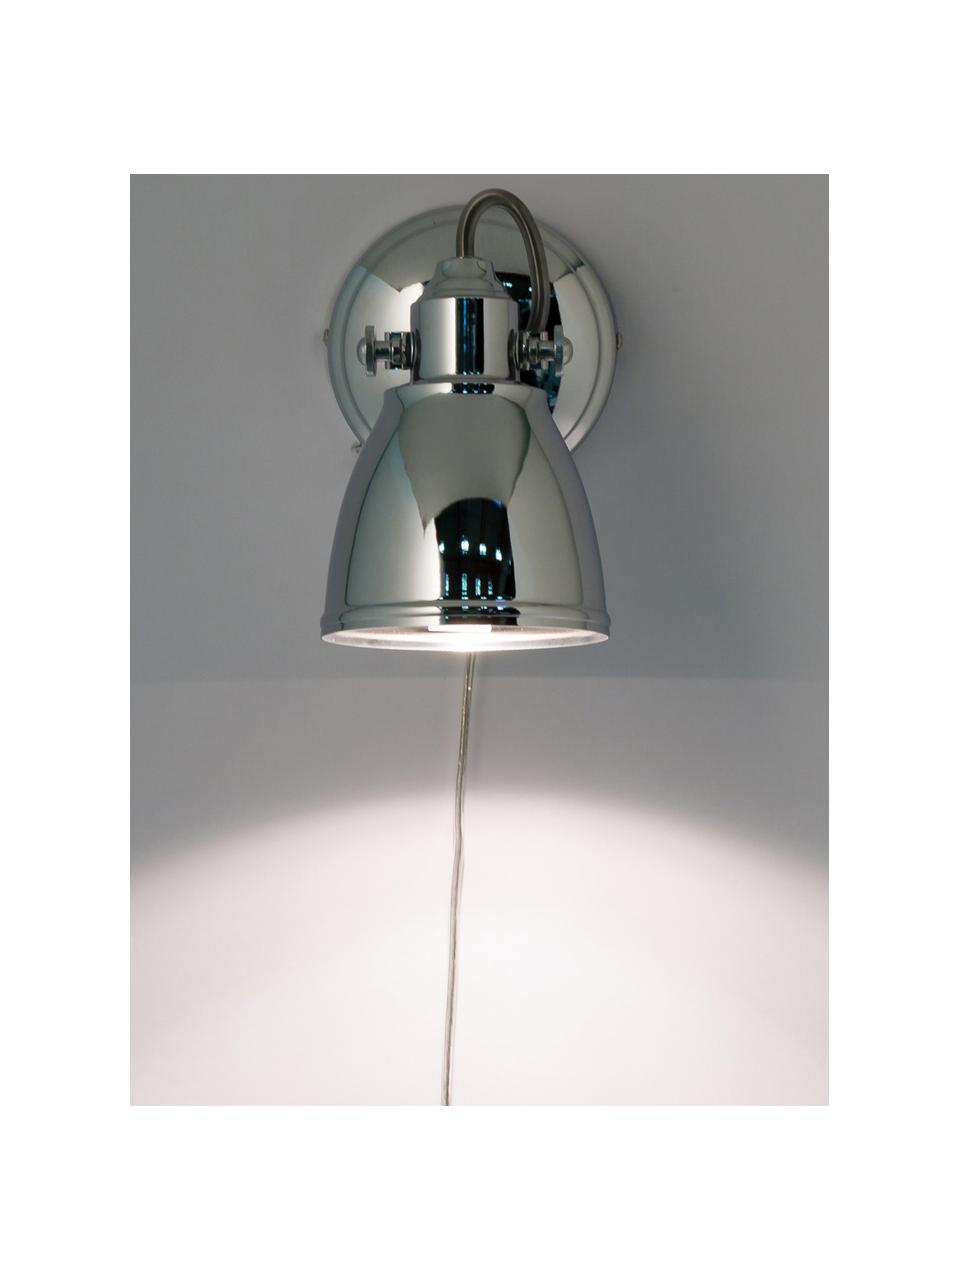 Verstellbare Wandleuchte Fjallbacka mit Stecker, Lampenschirm: Metall, verchromt, Chromfarben, T 20 x H 17 cm